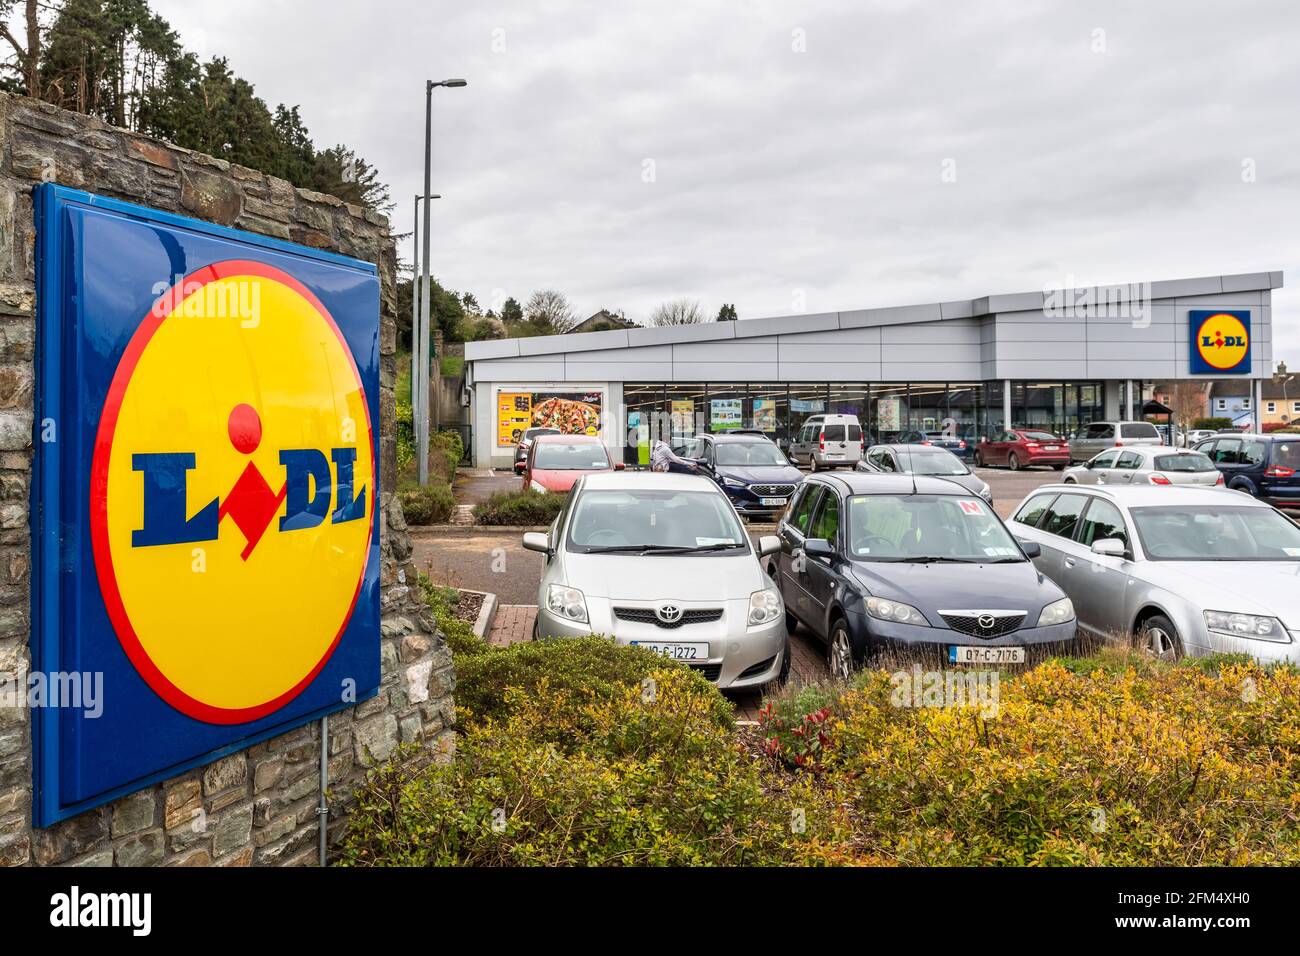 Lidl discount supermarket a Clonakilty, West Cork, Irlanda. Foto Stock